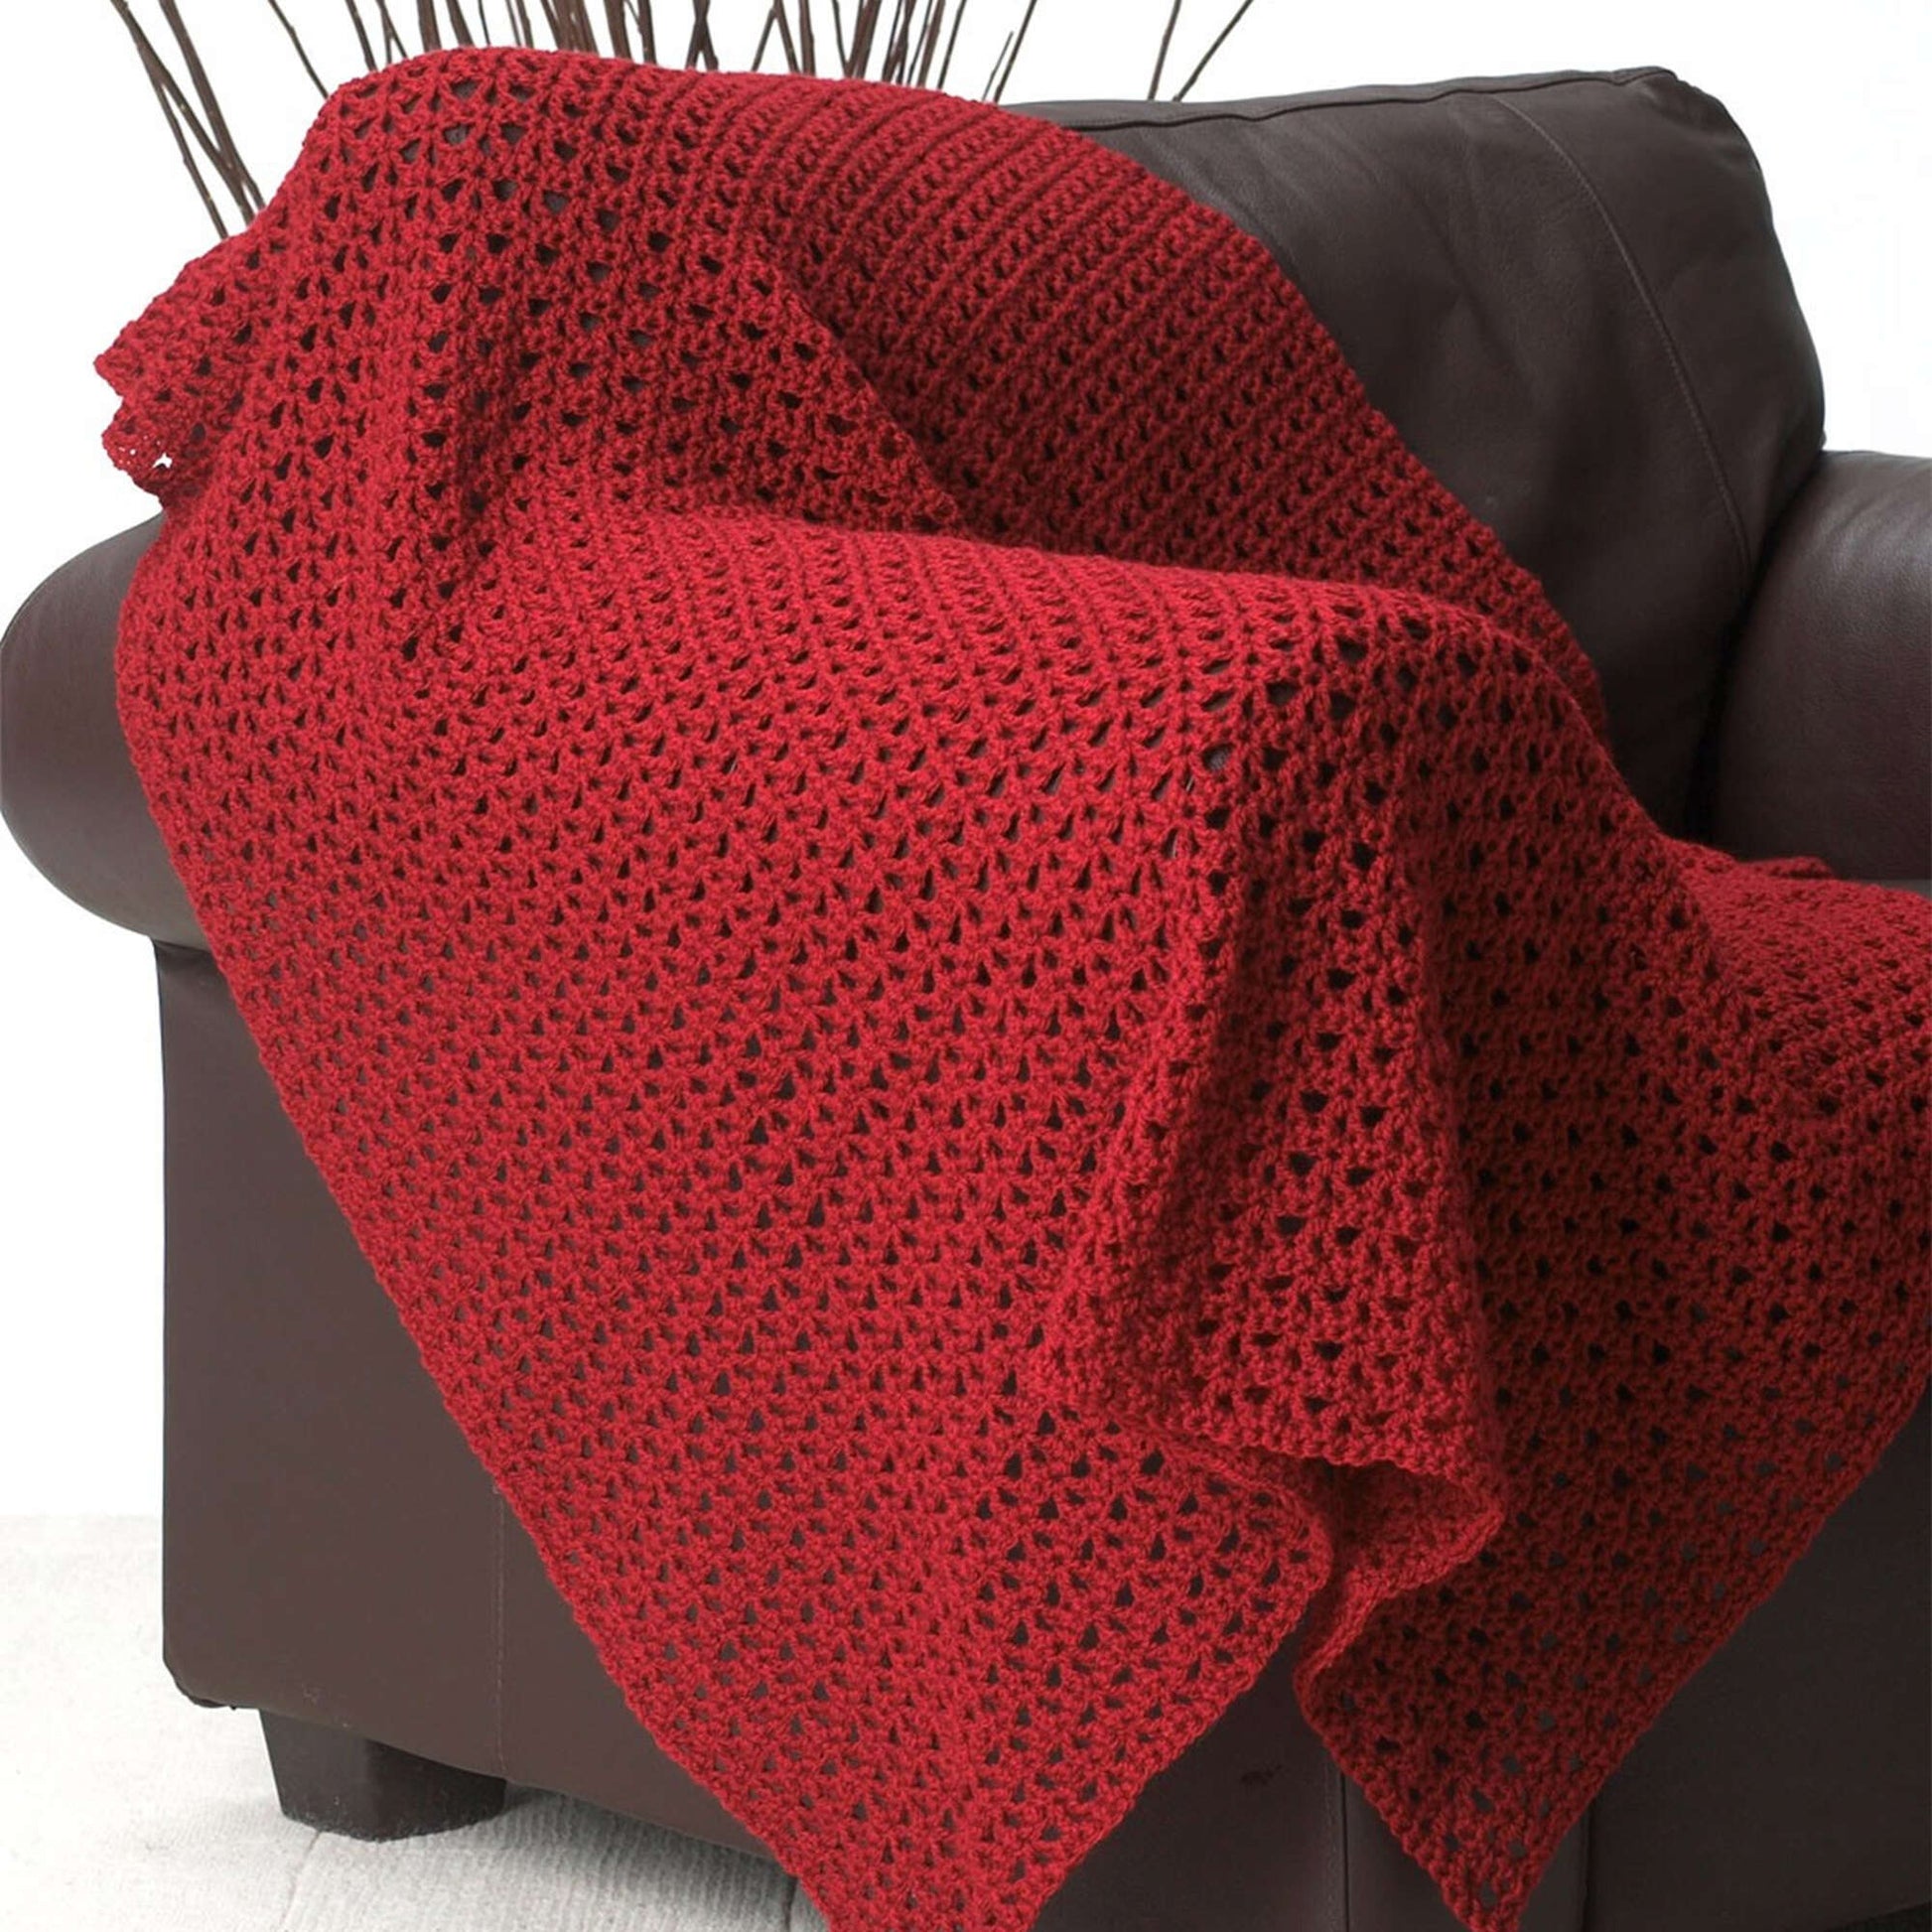 Free Bernat Red Crochet Blanket Pattern